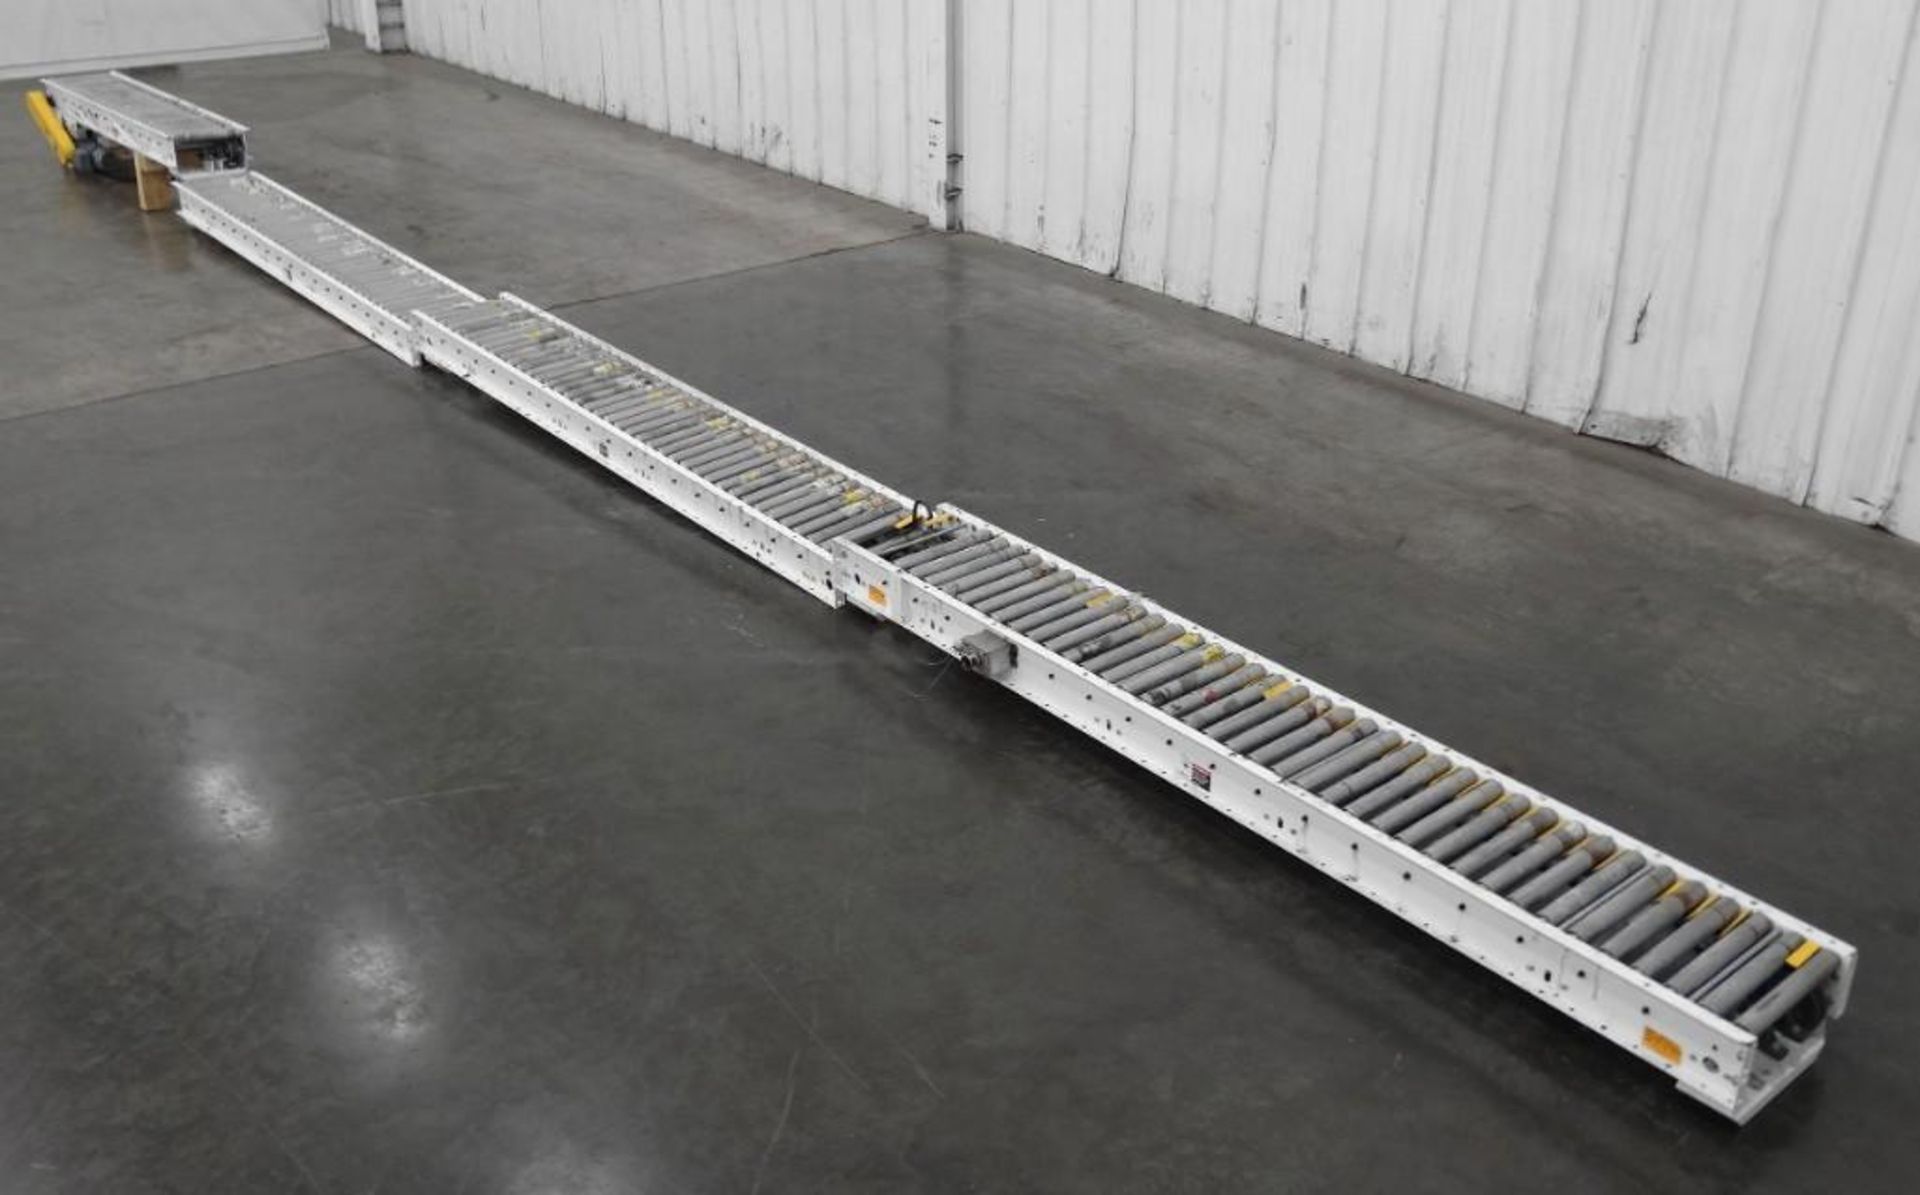 Hytrol 37.5' Long x 15" Wide Roller Conveyor